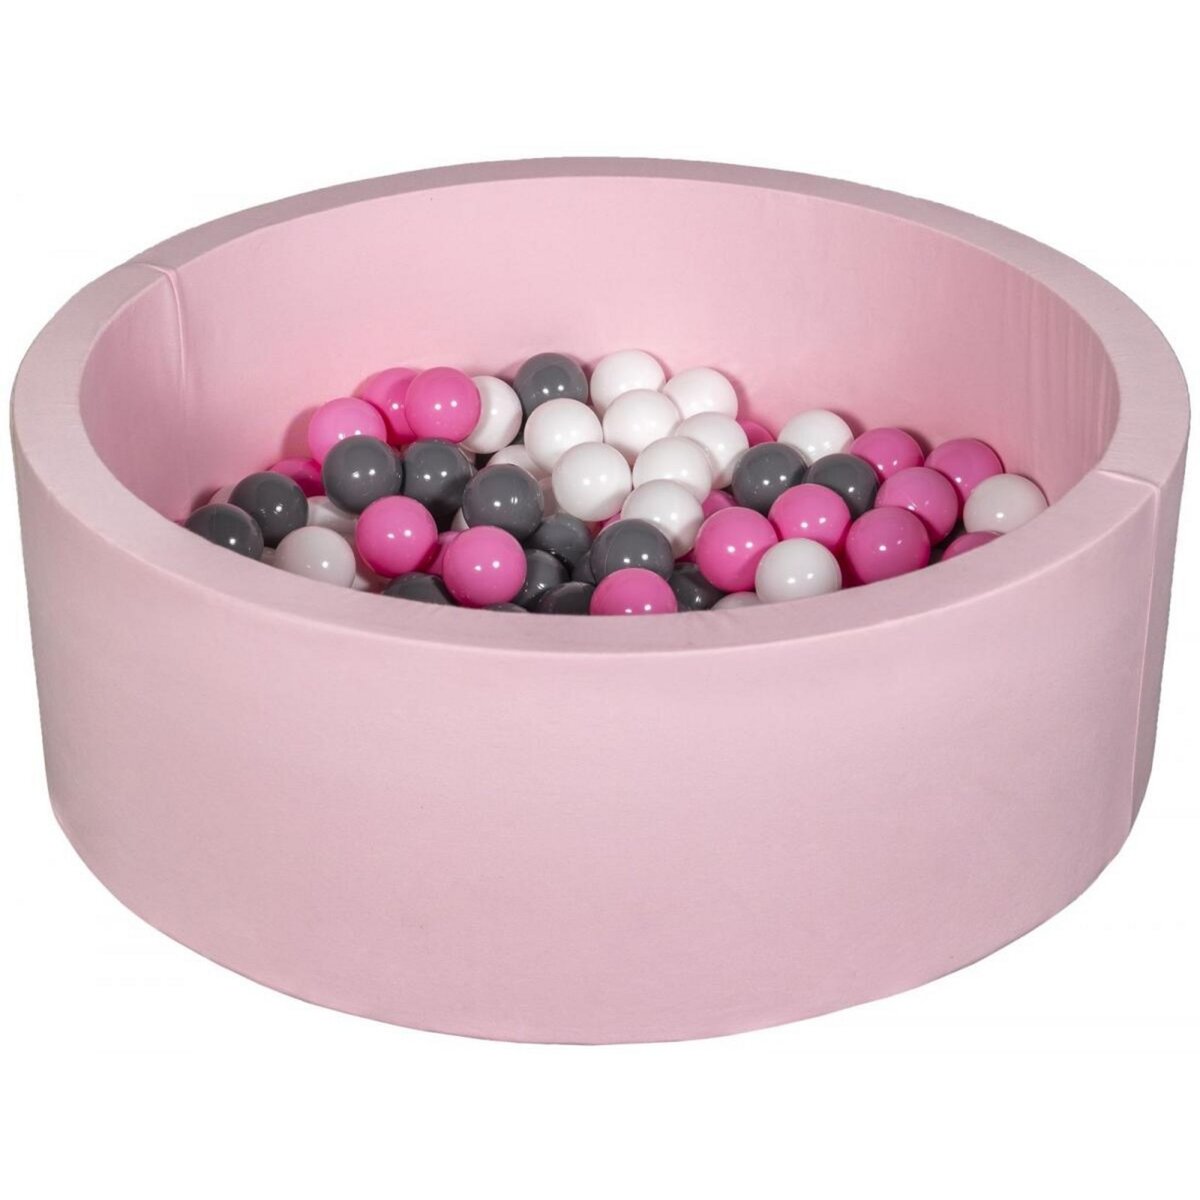  Piscine à balles Aire de jeu + 150 balles rose blanc,rose clair,gris